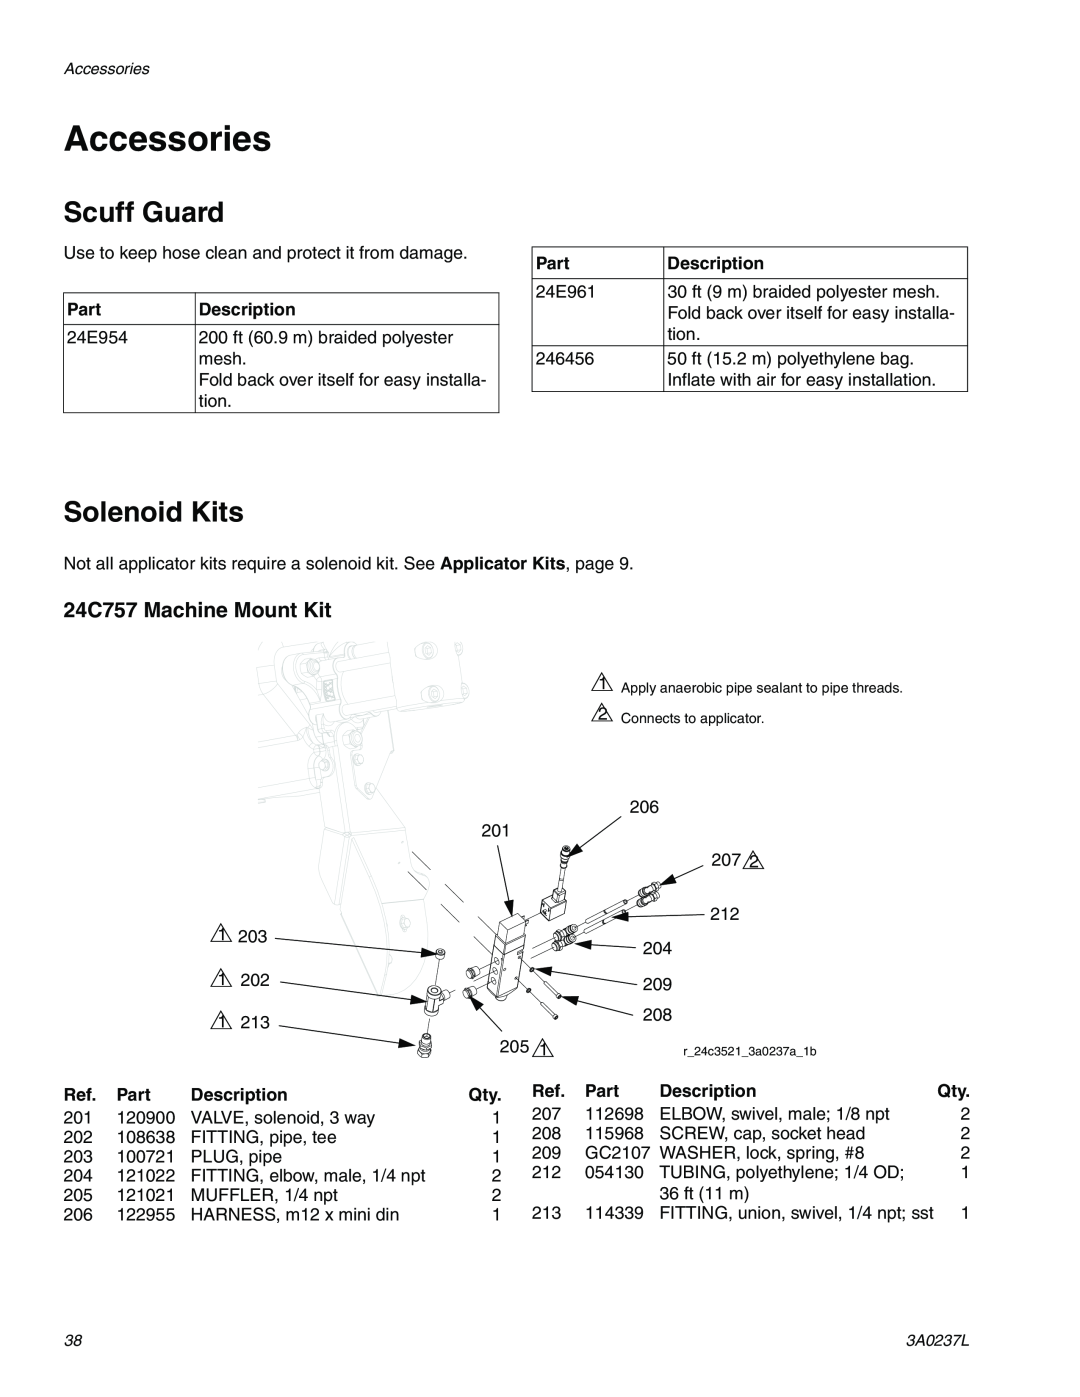 Graco 3A0237L Accessories, Scuff Guard, Solenoid Kits, 24C757 Machine Mount Kit, Part, Description 